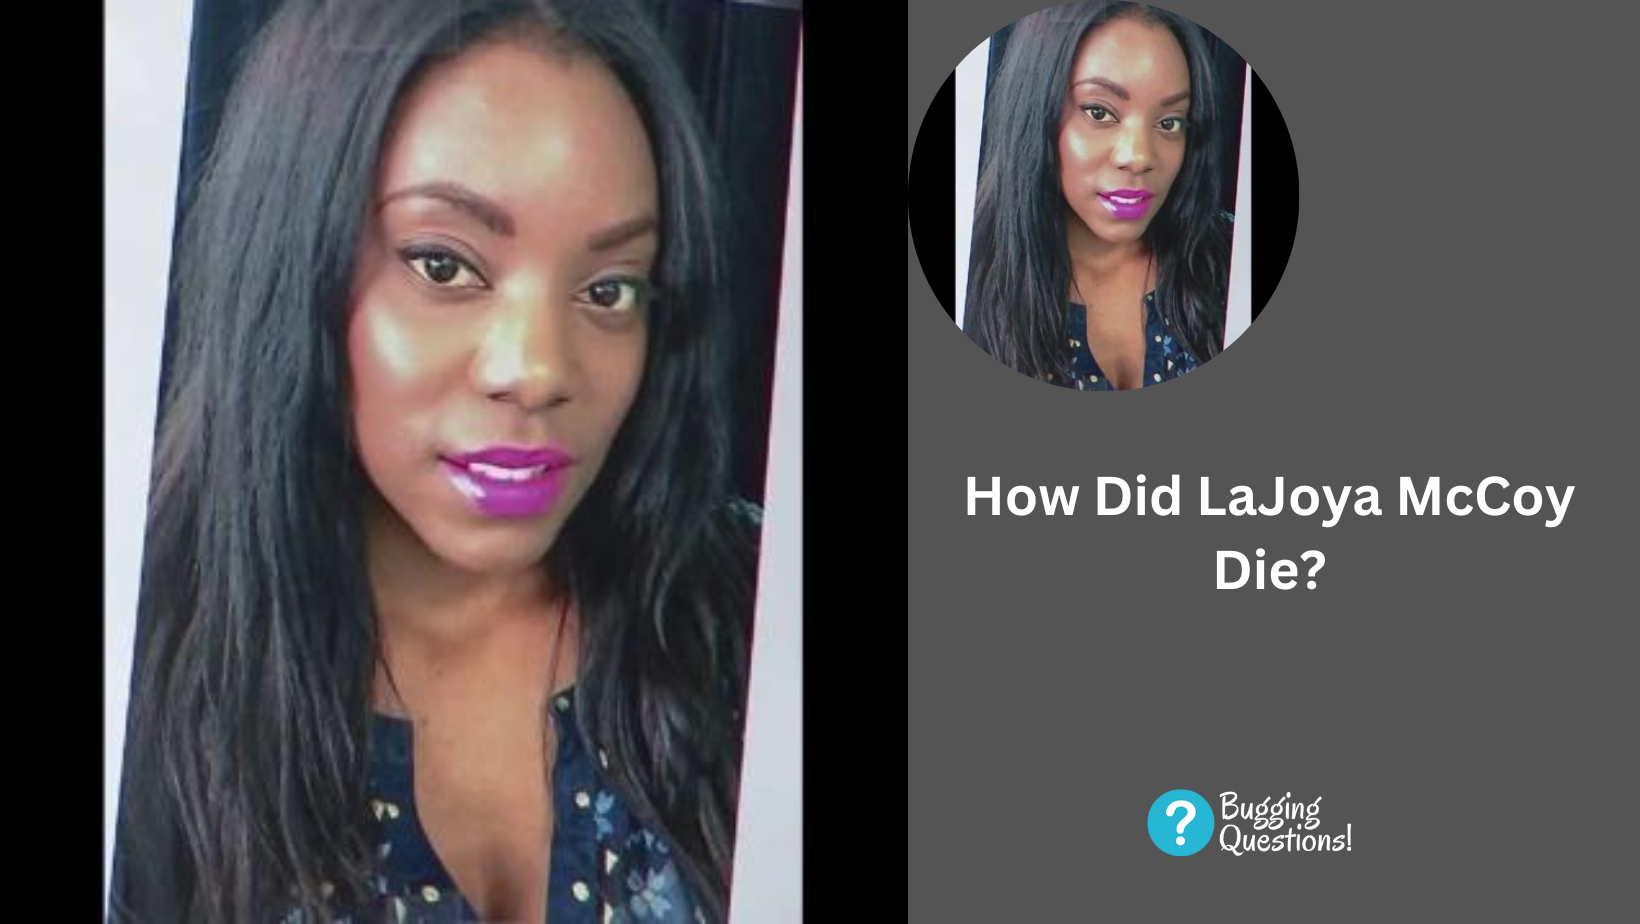 How Did LaJoya McCoy Die?